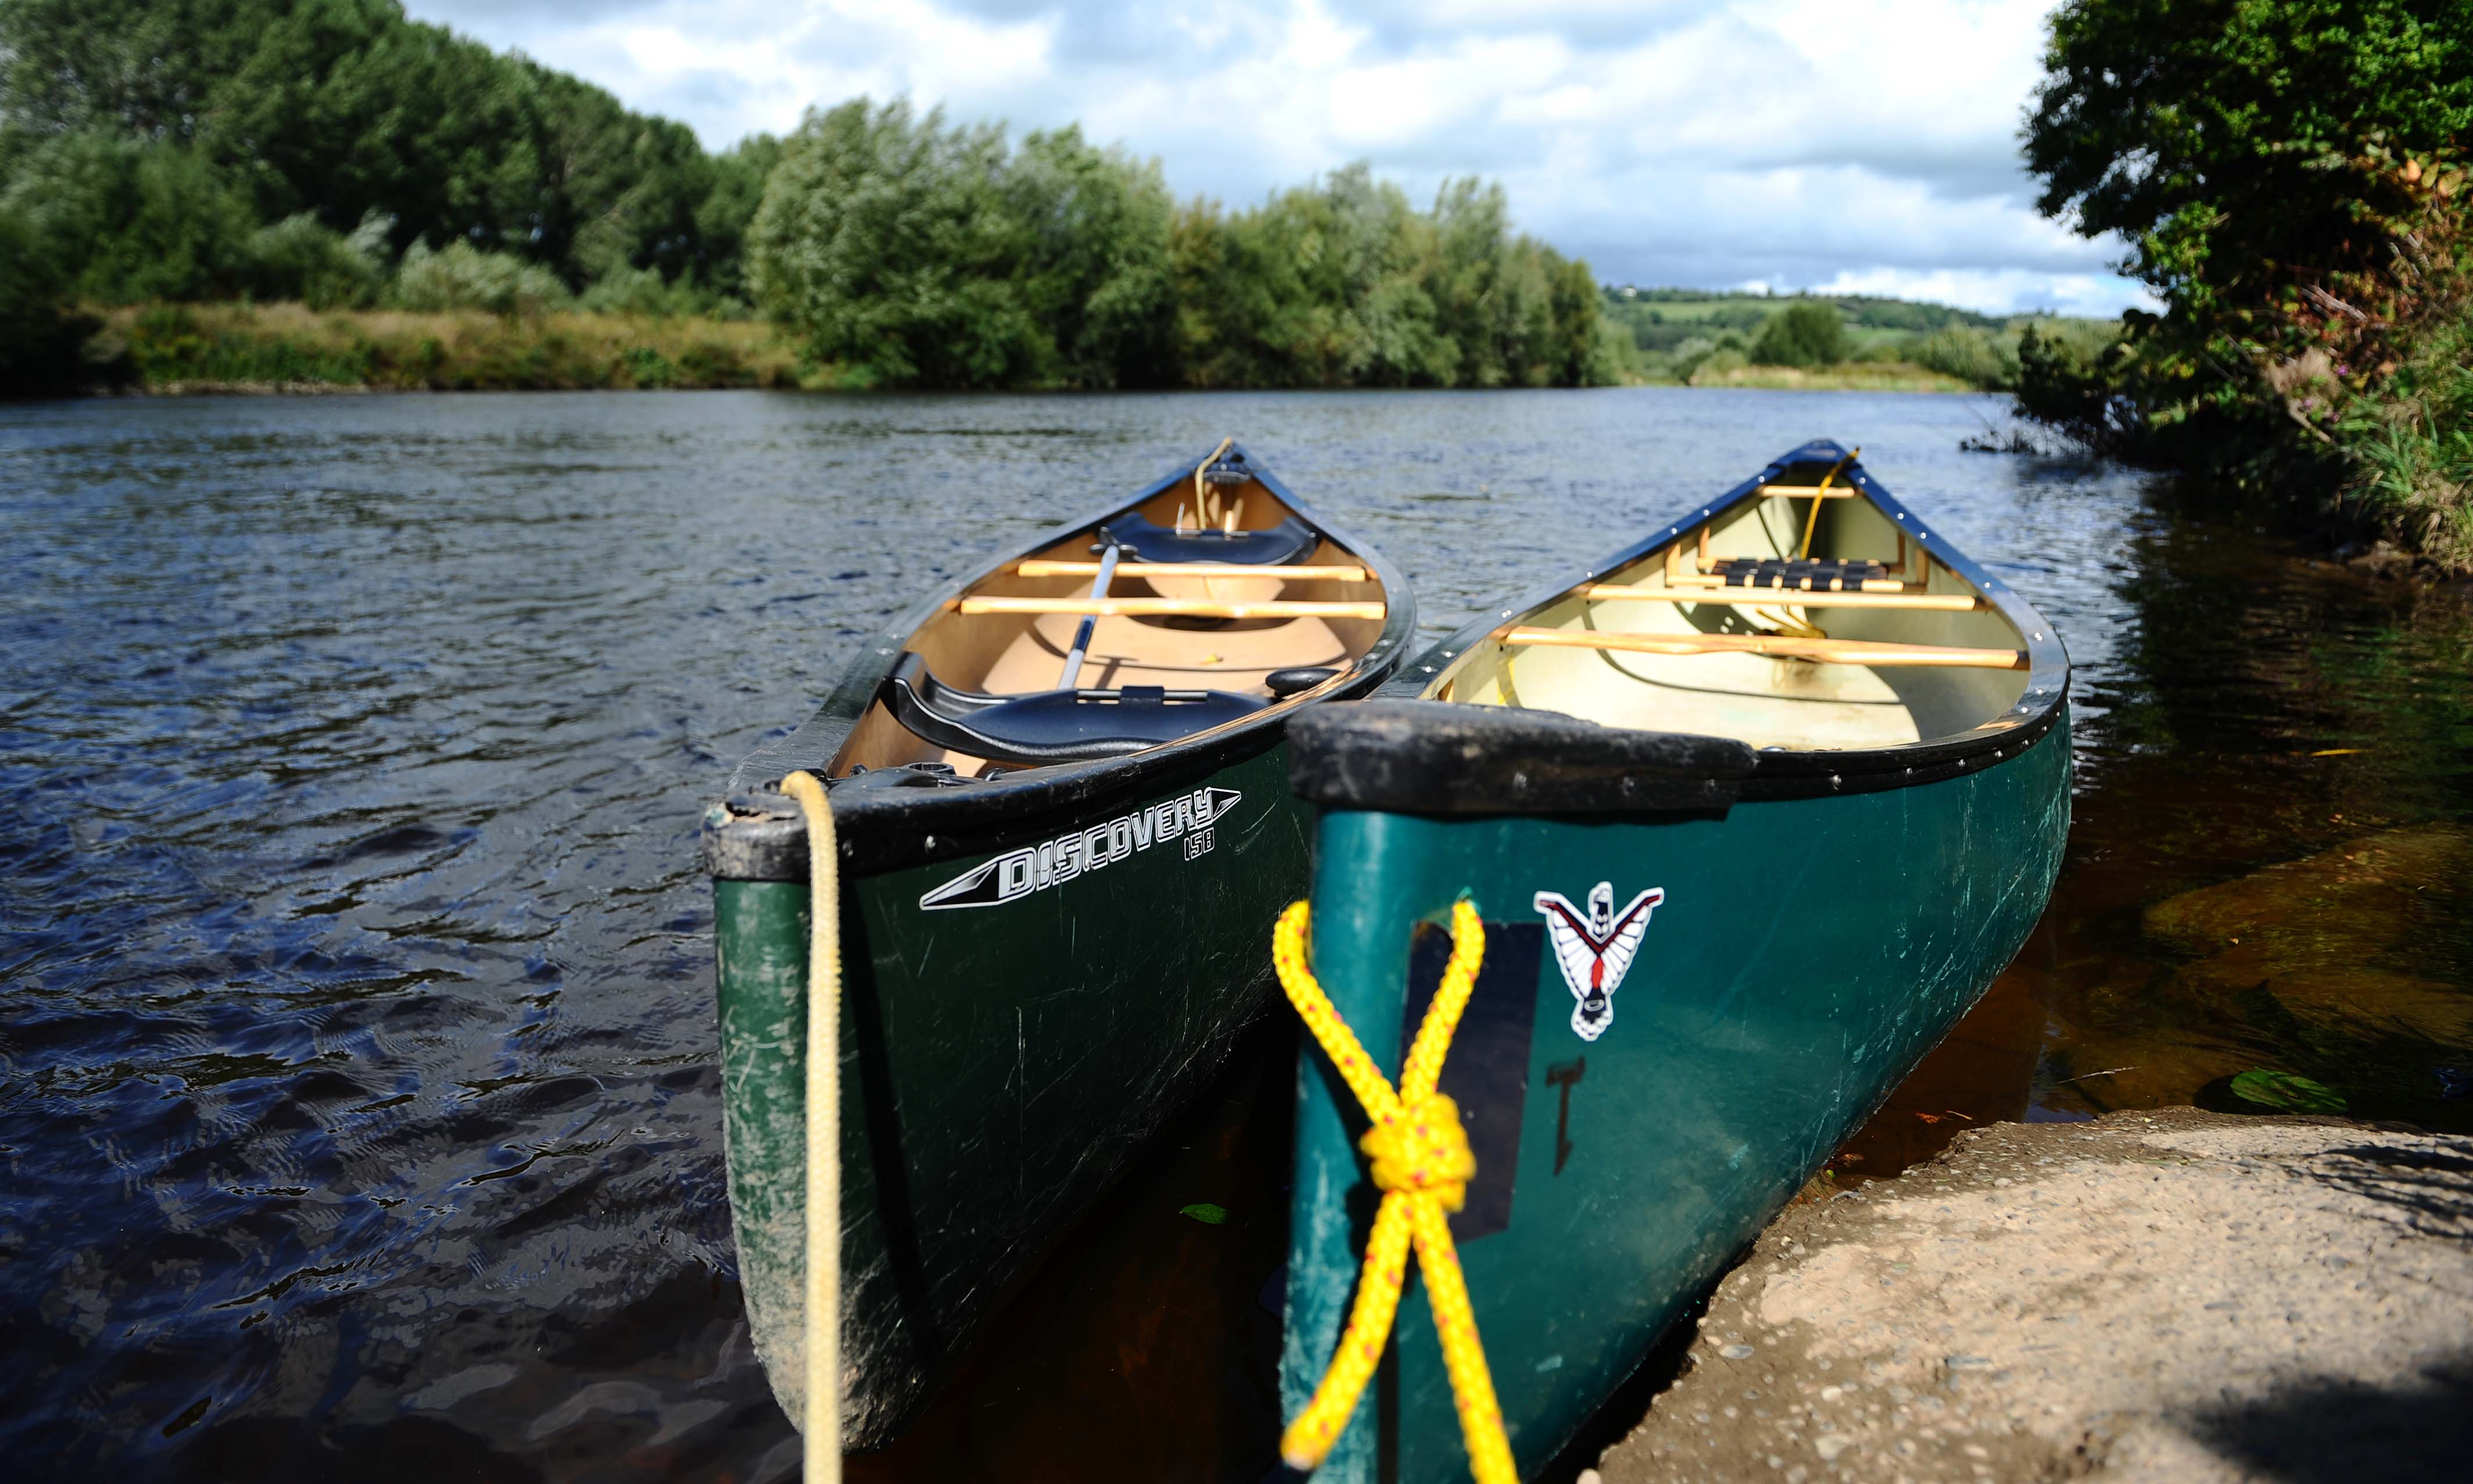 Plan a canoe trip